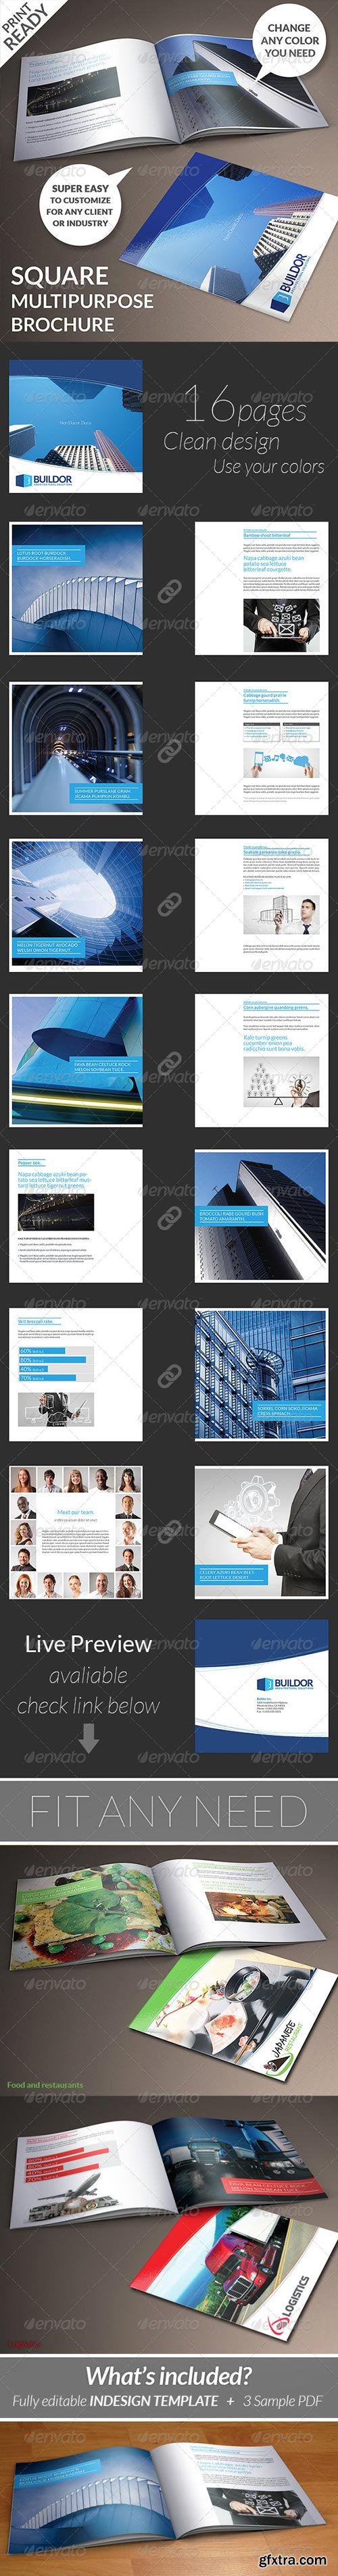 GraphicRiver - Square Multipurpose Brochure 6261834